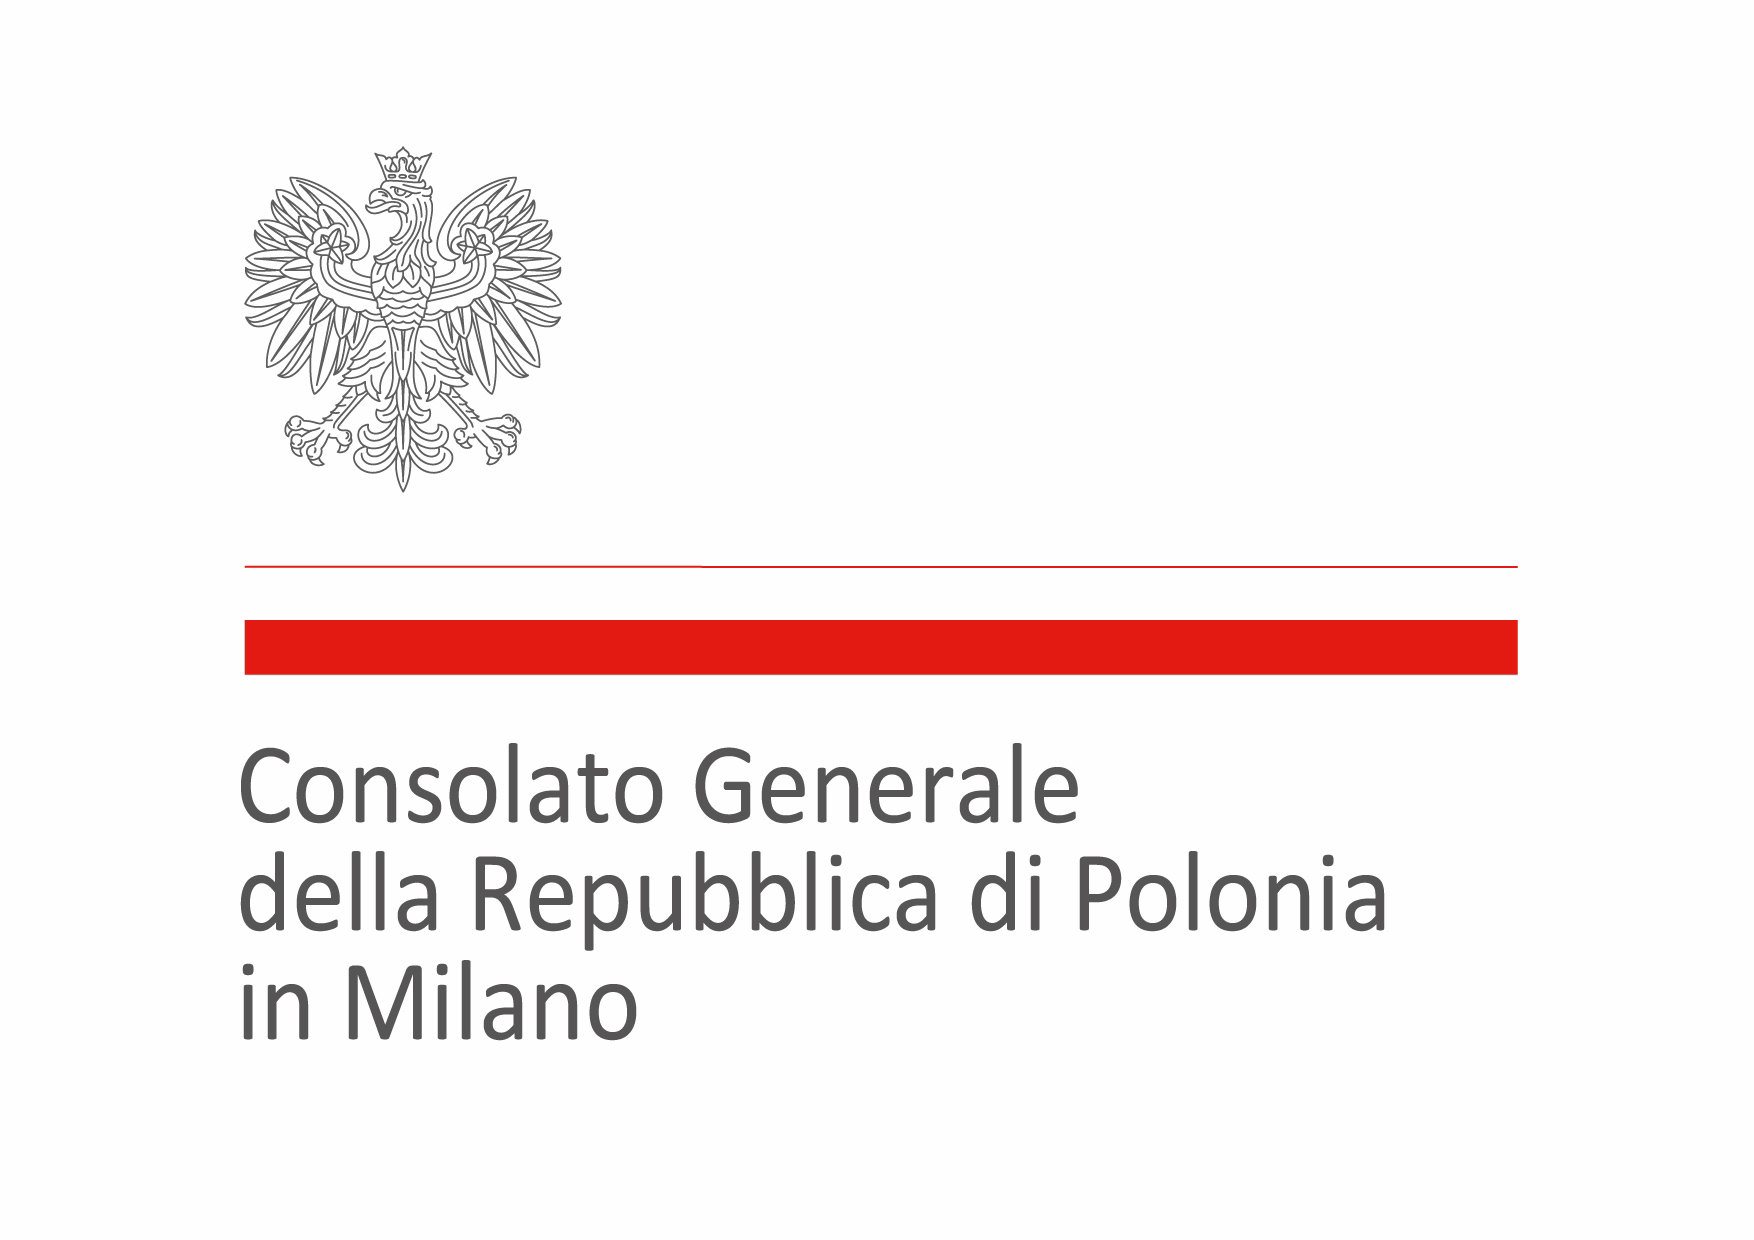 Consolato Generale della Repubblica di Polonia